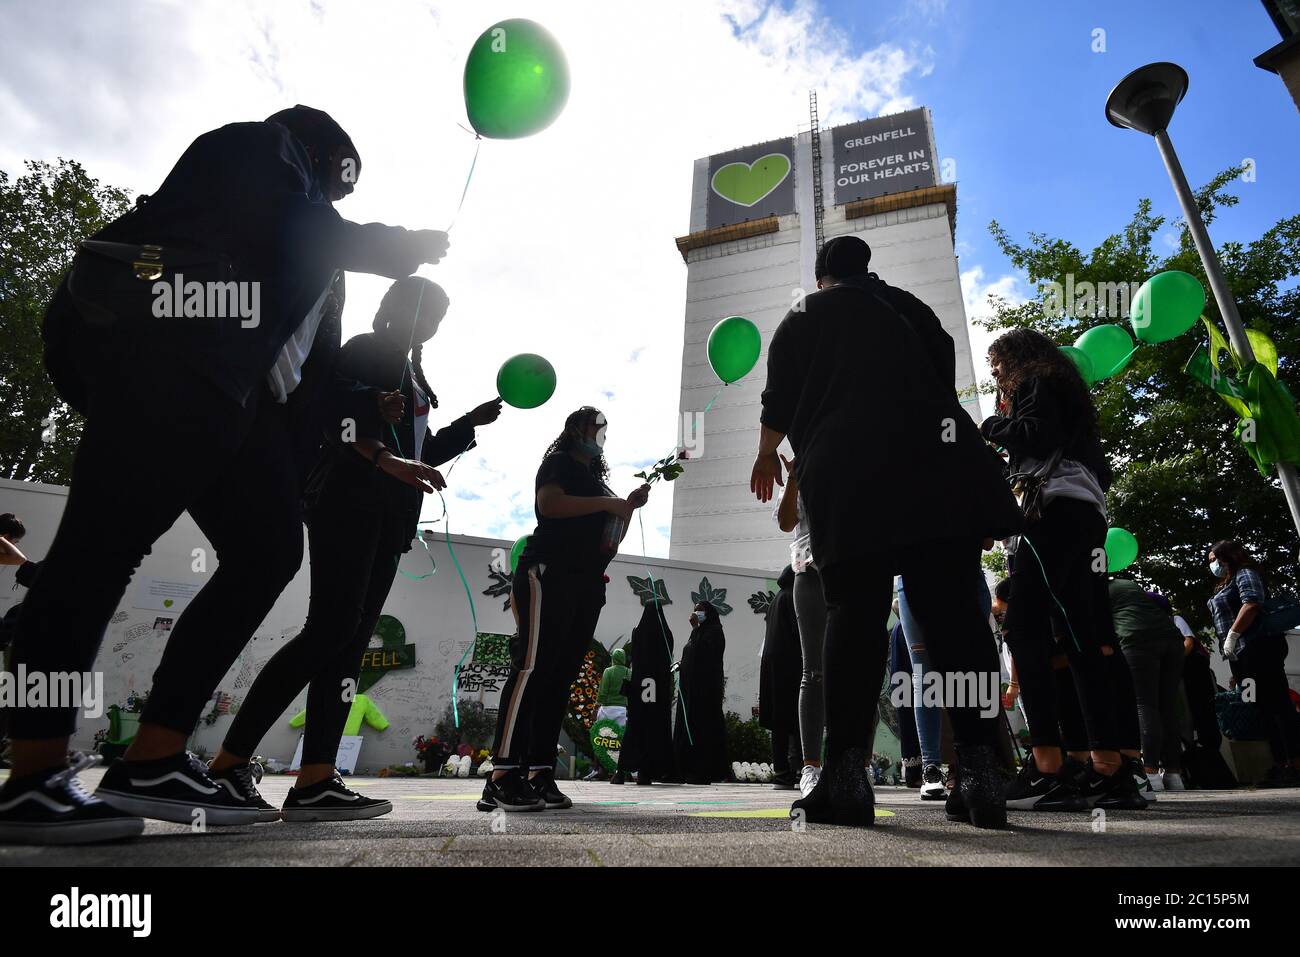 La gente rilascia palloncini presso il Mosaico della comunità commemorativa di Grenfell alla base del blocco della torre di Londra il terzo anniversario dell'incendio della Torre di Grenfell, che ha causato 72 vittime il 14 2017 giugno. Foto Stock